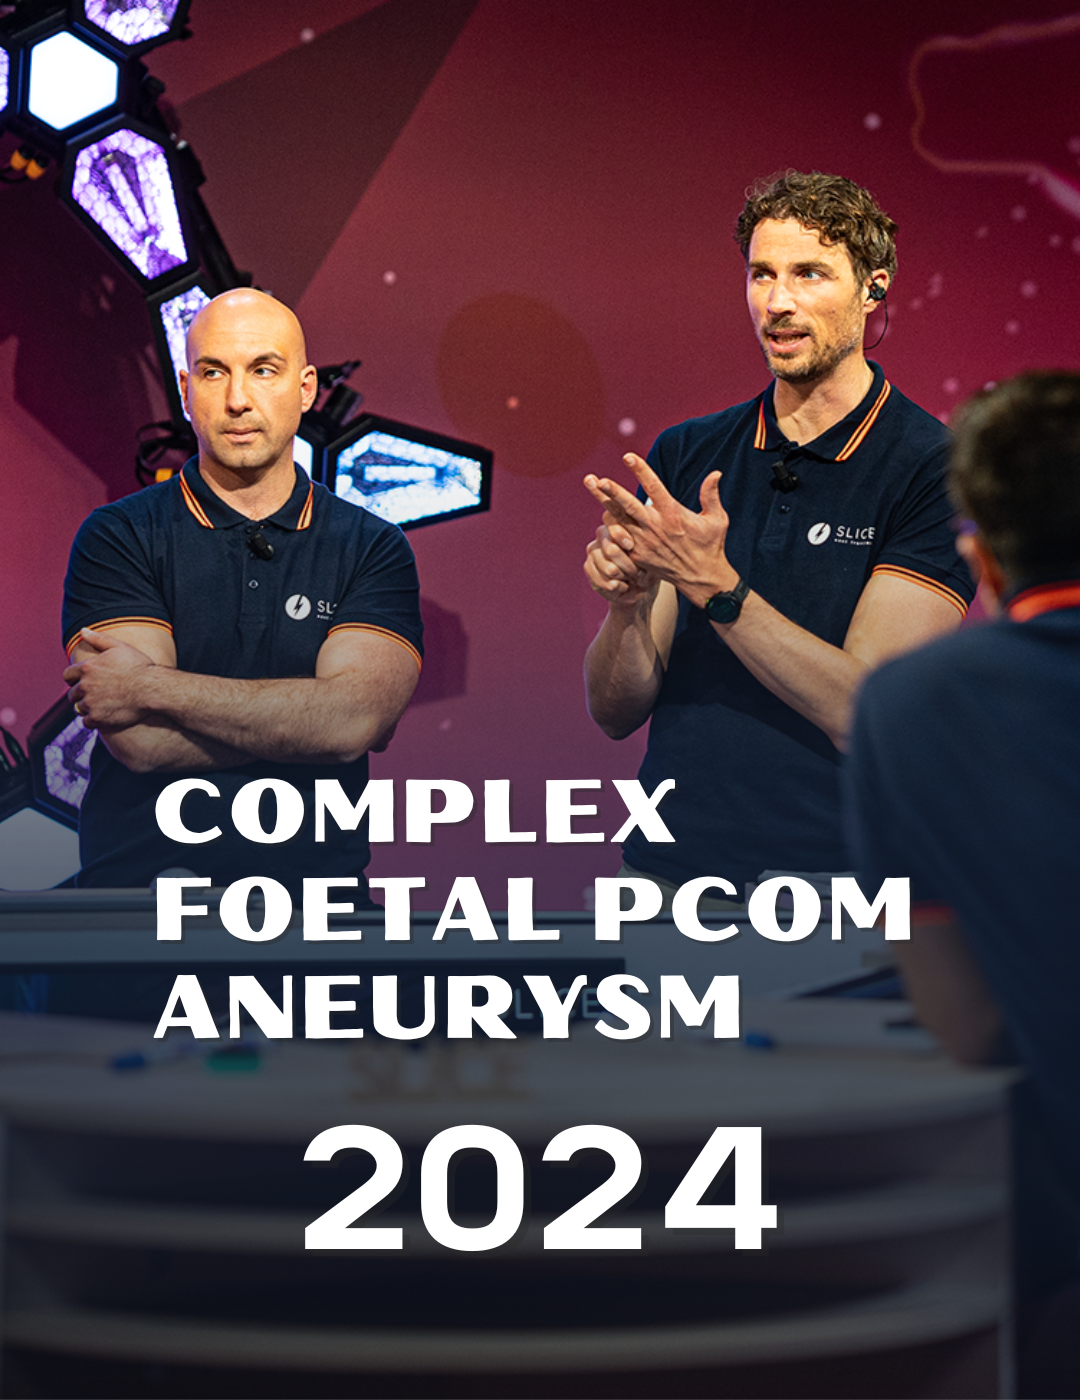 Complex foetal Pcom aneurysm 2024